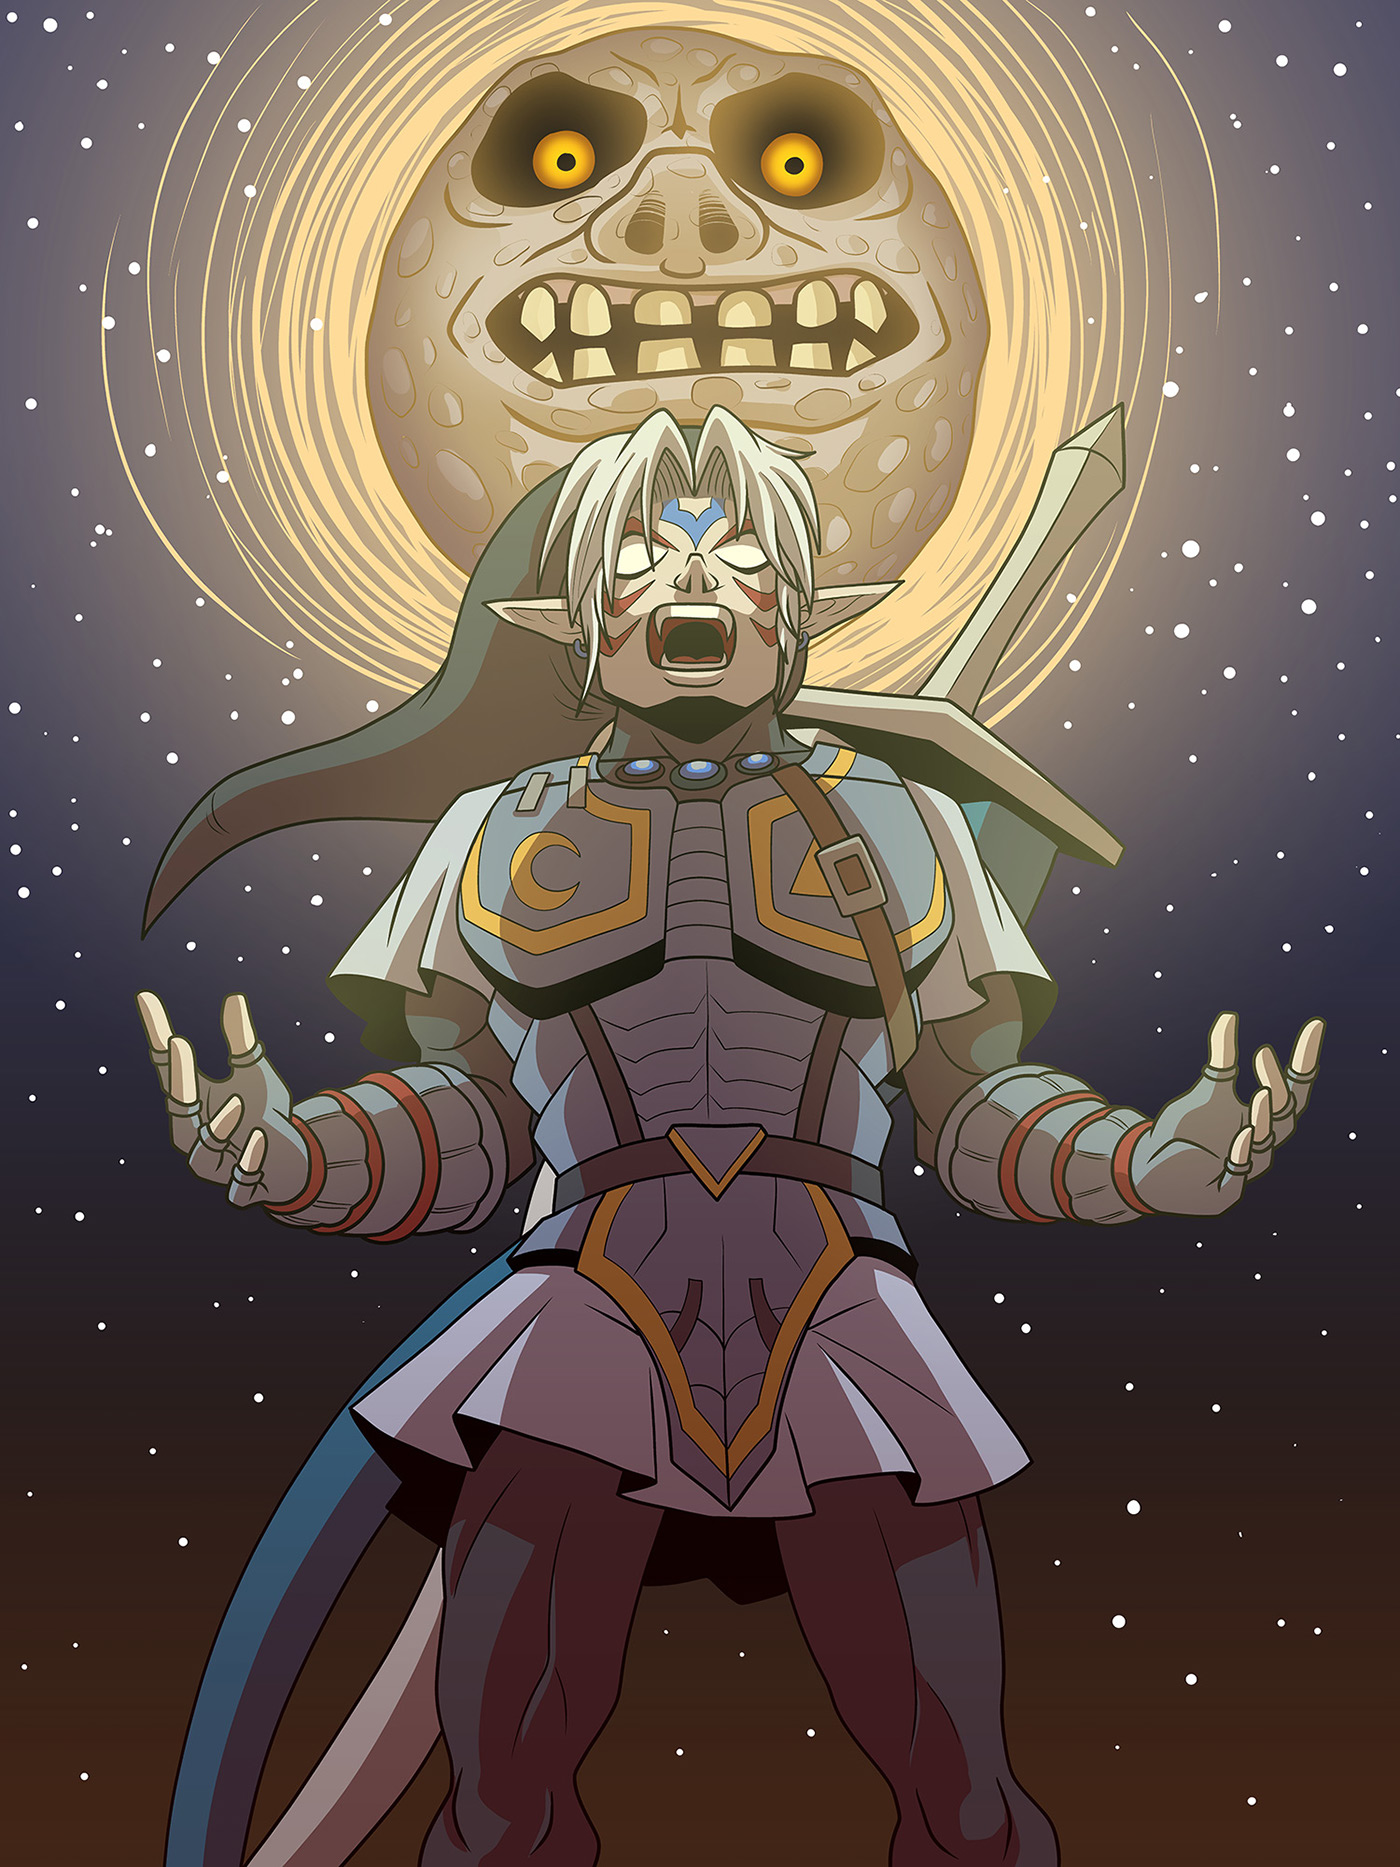 Fierce Deity Link from The Legend of Zelda: Majora's Mask. 